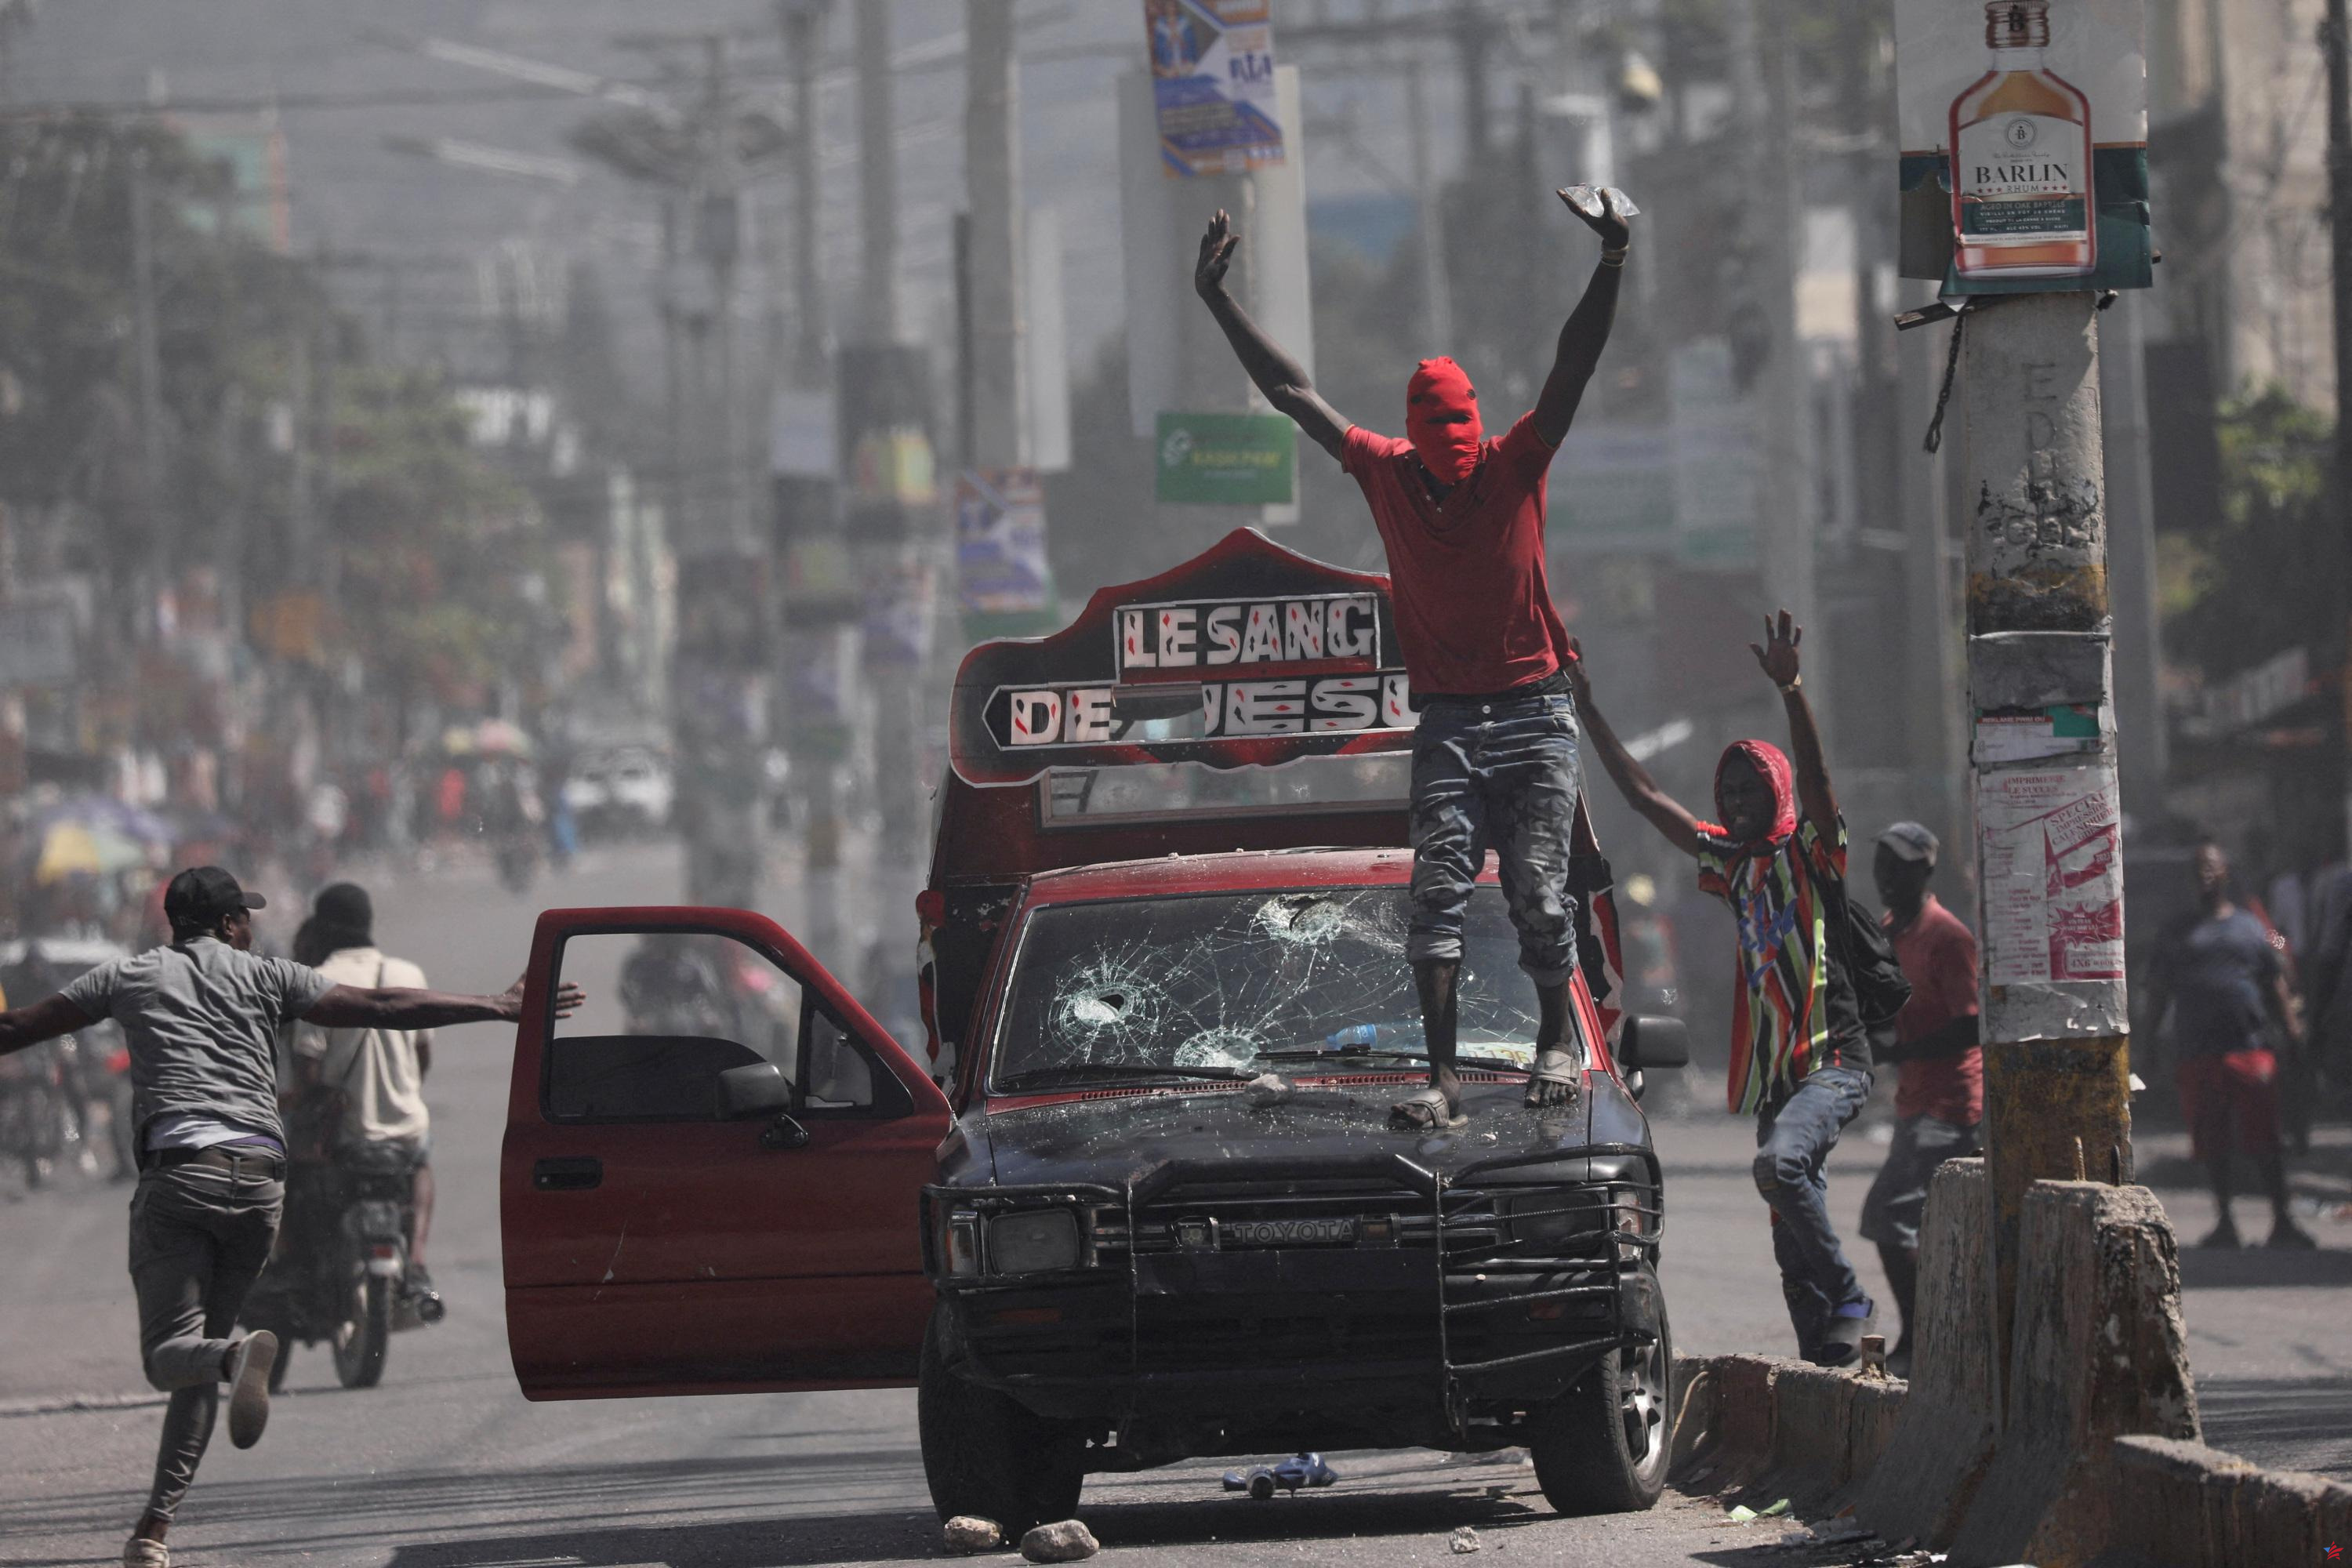 Haití: Prisión de Puerto Príncipe asaltada por pandillas, reclusos escapan